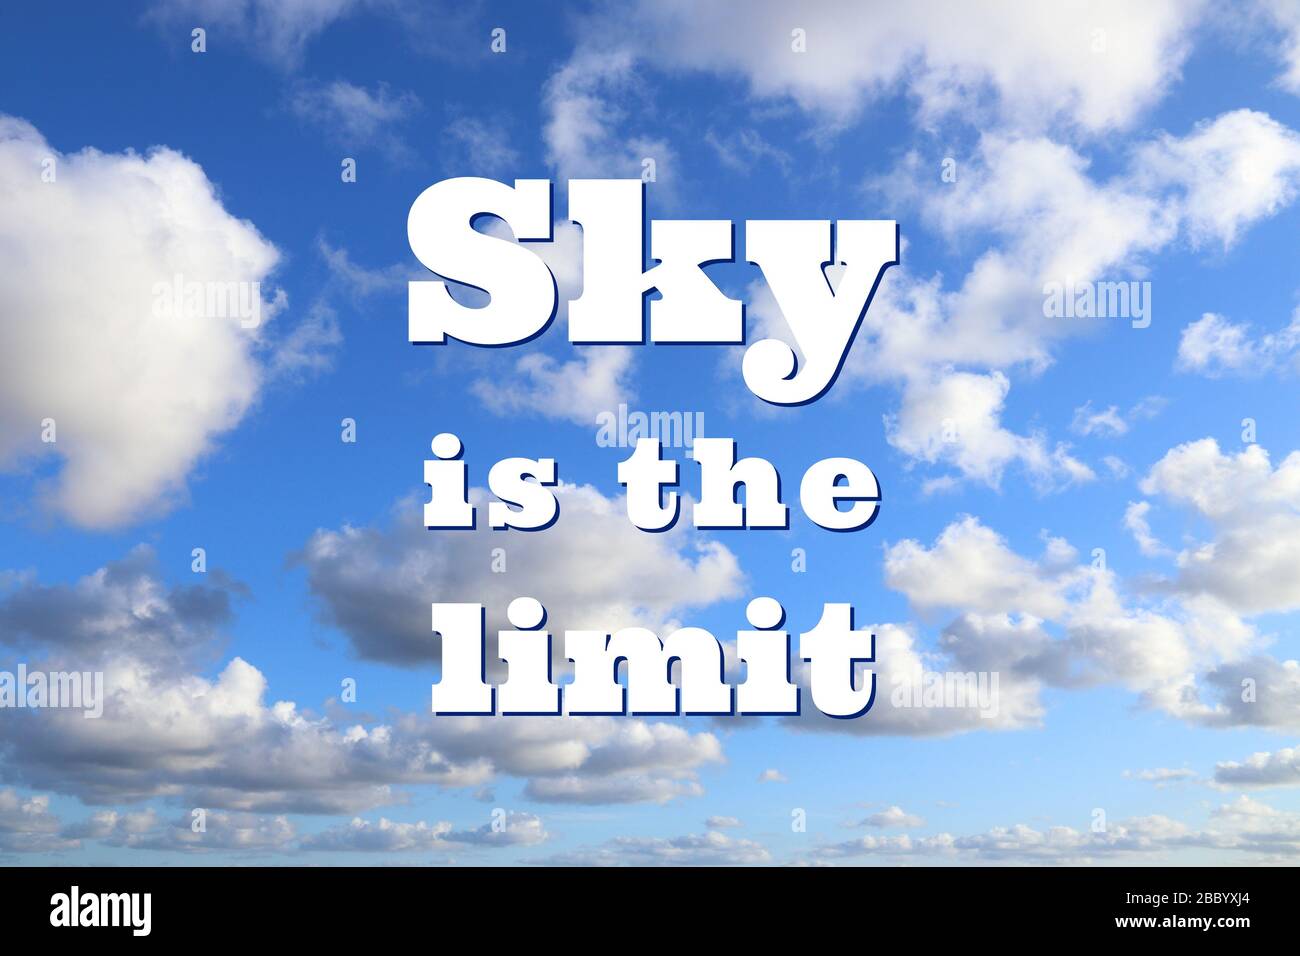 Der Himmel ist die Grenze. Poster zum inspirierenden Angebot am Arbeitsplatz. Zeichen der Erfolgsmotivation. Stockfoto